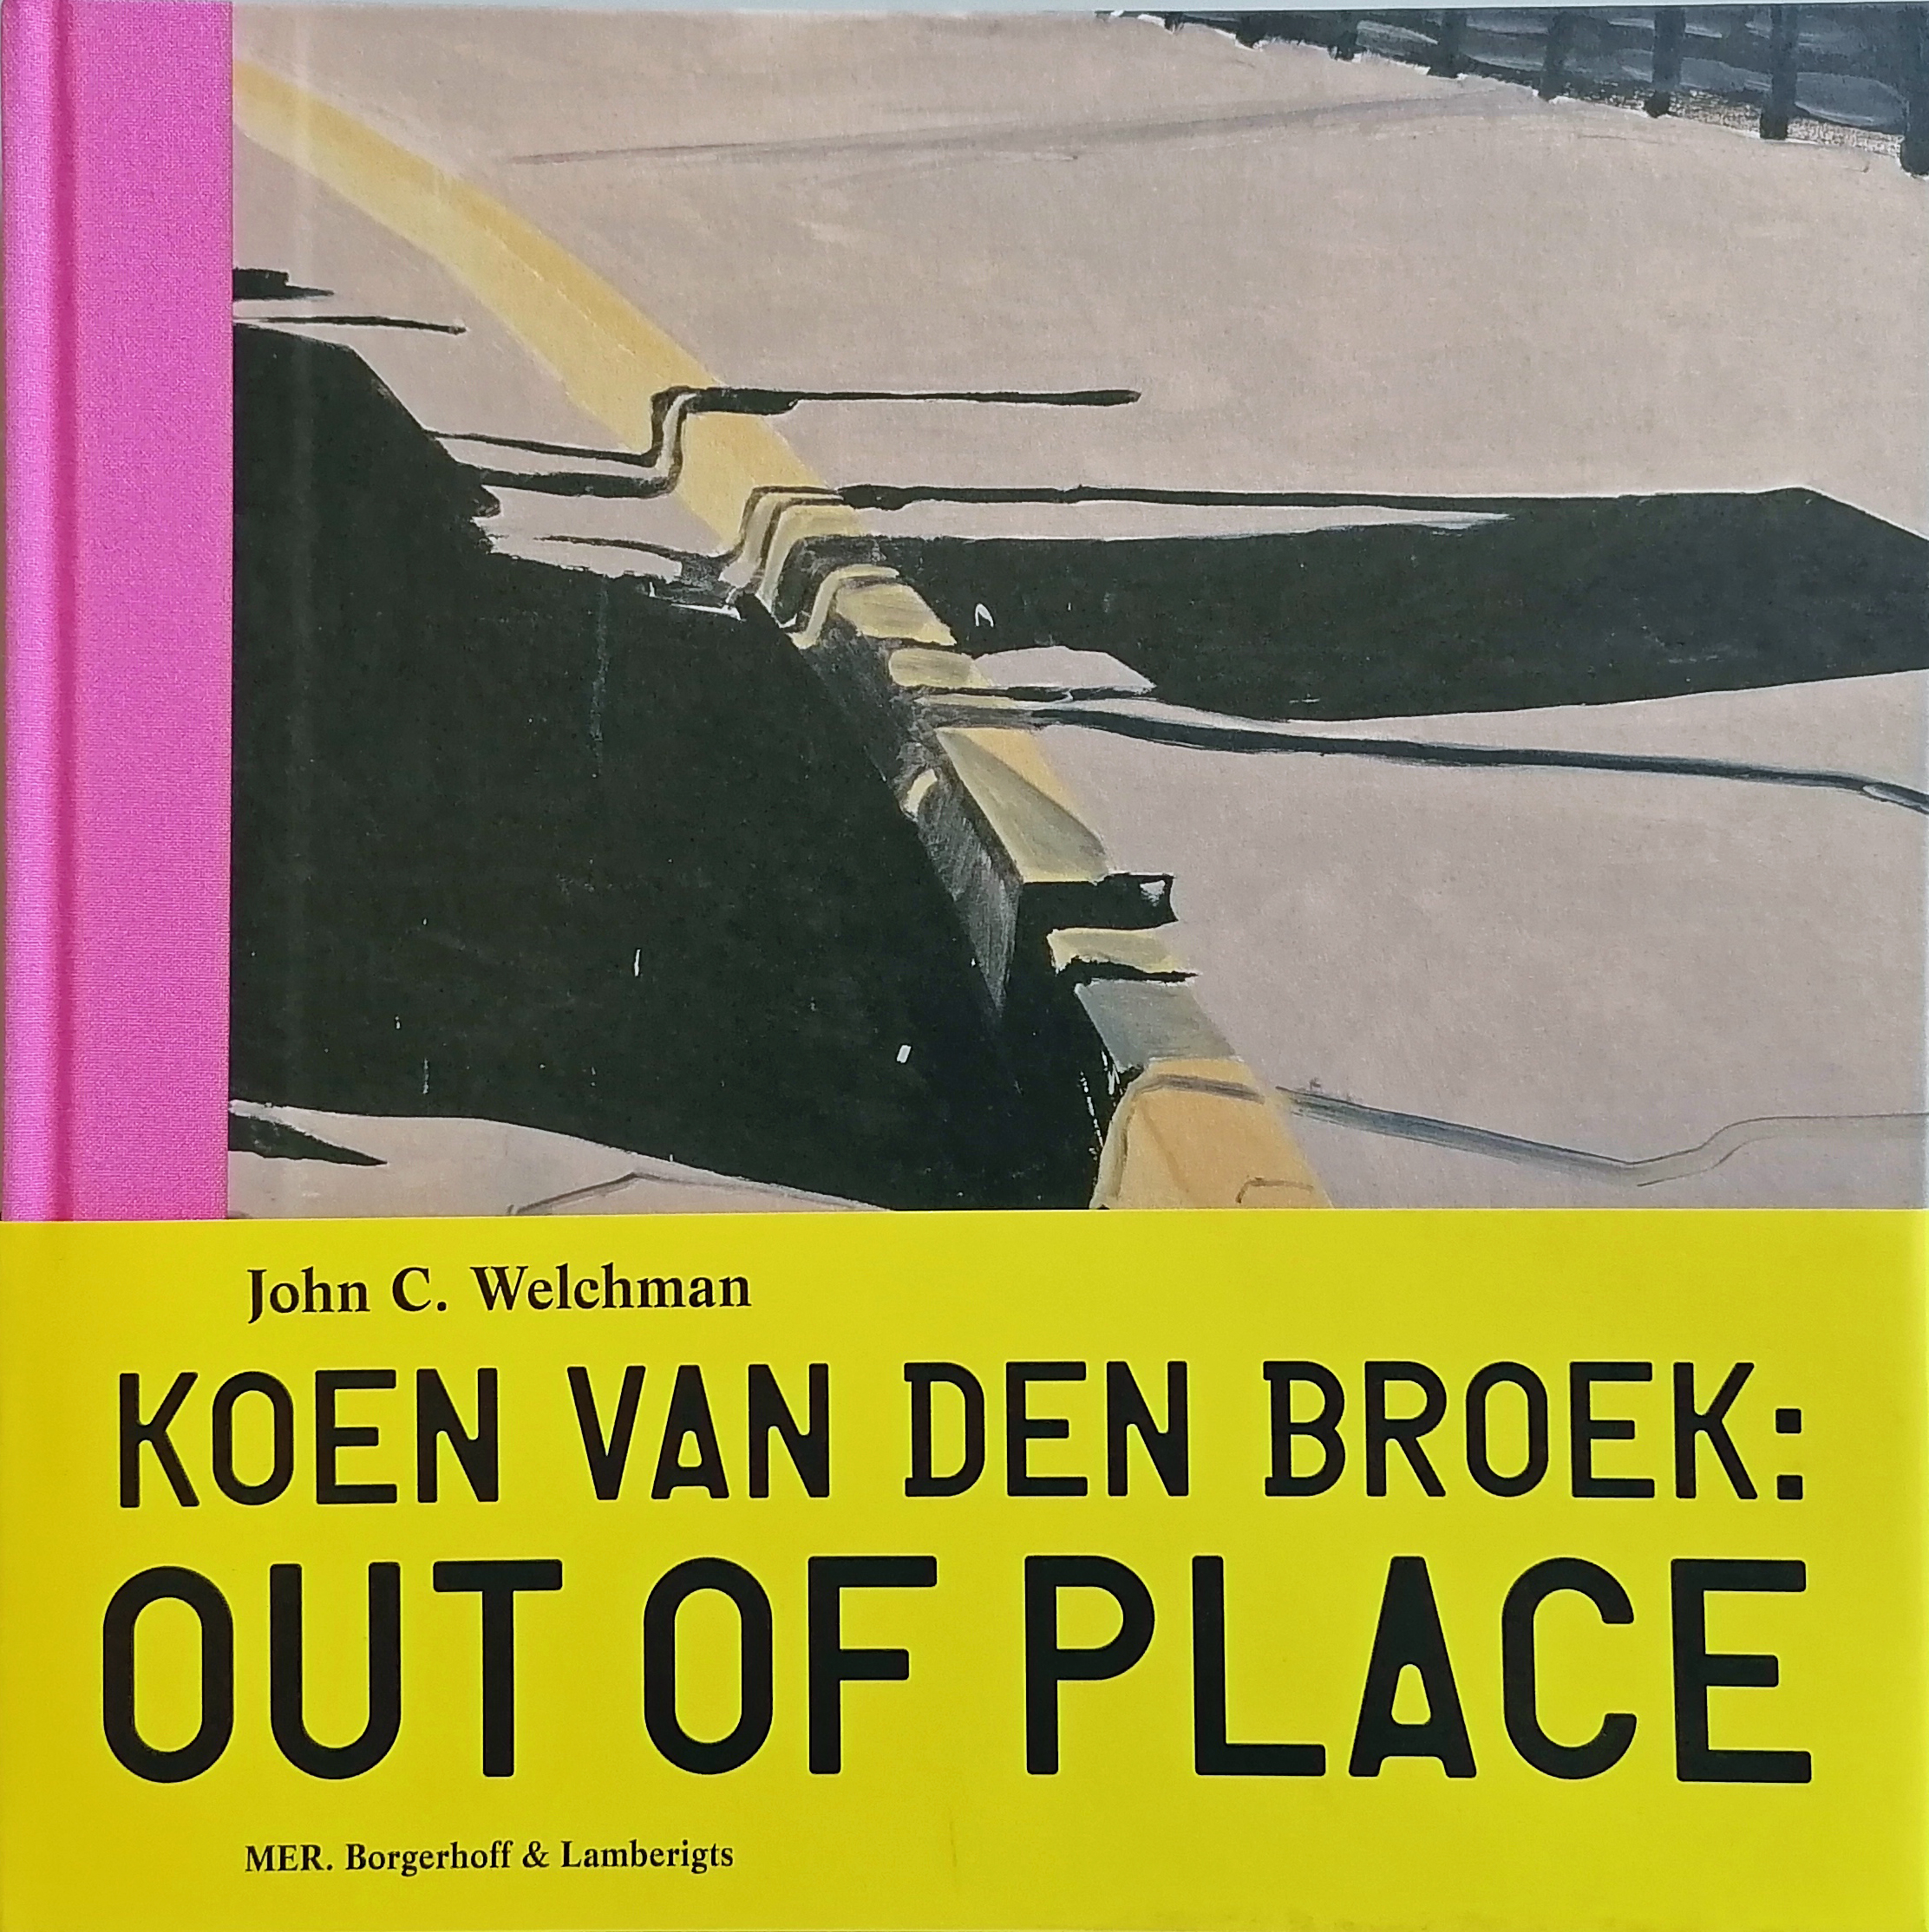 John C. Welchman: Koen van den Broek: Out Of Place